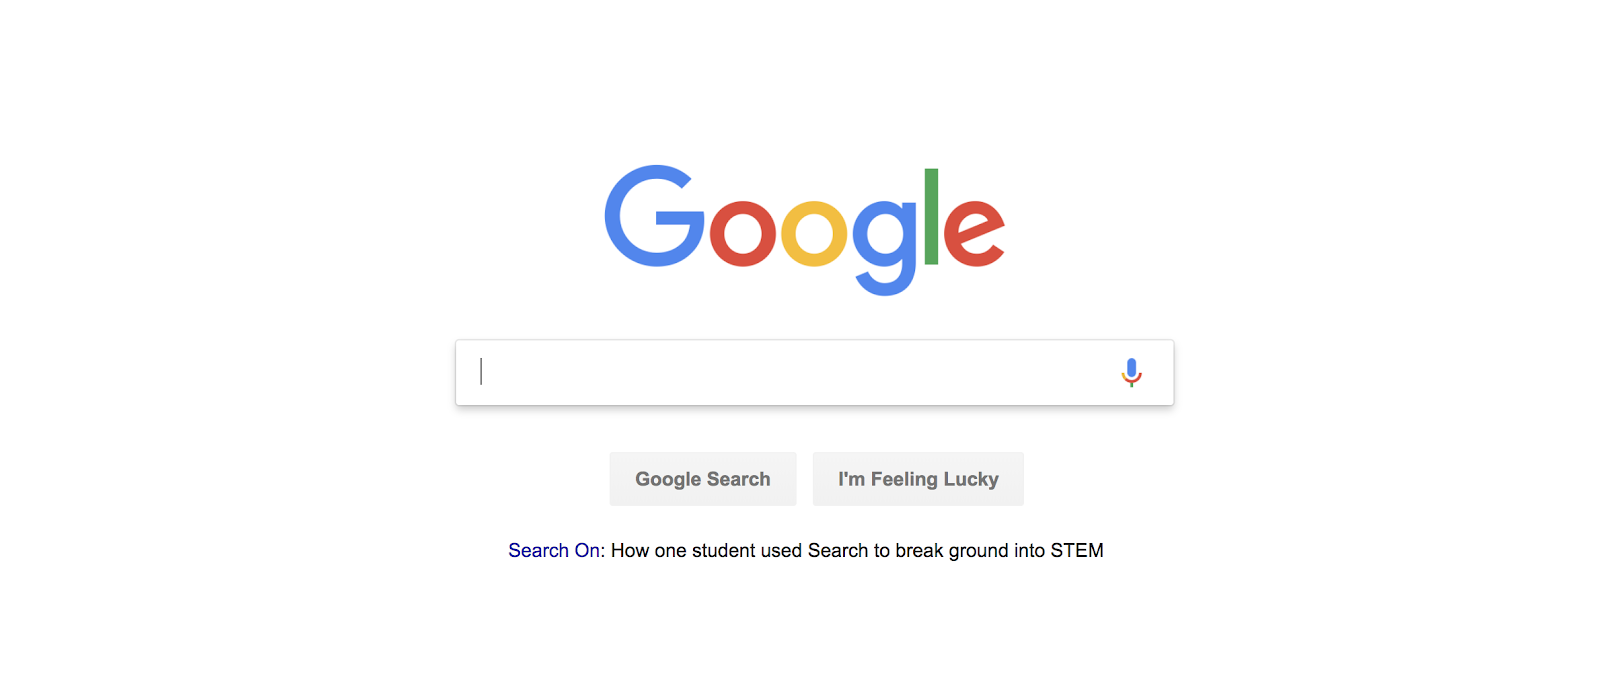 موتورهای جستجوی برتر: صفحه اصلی گوگل